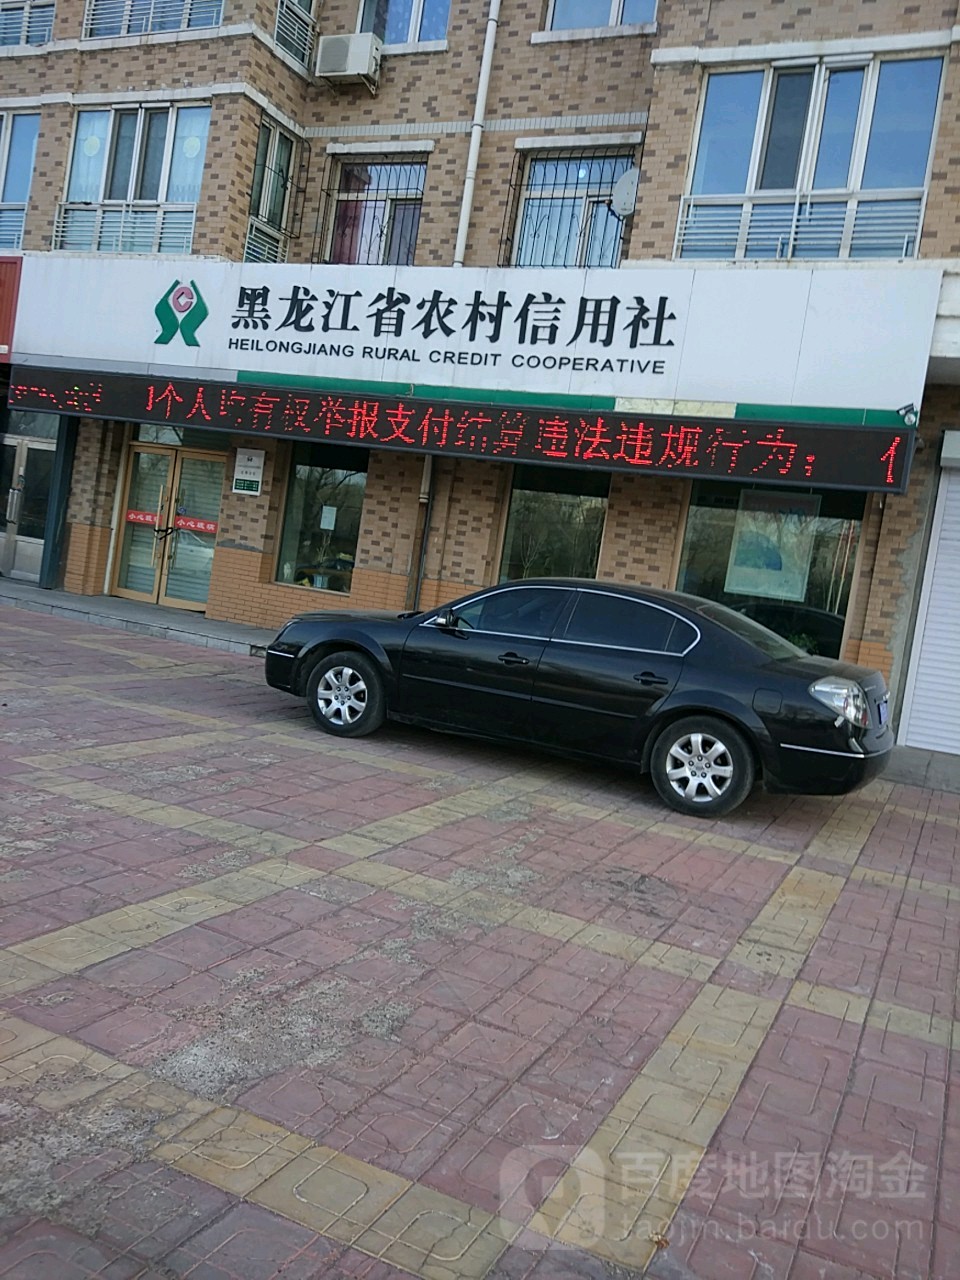 黑龙江省农村信用社(向阳大街店)